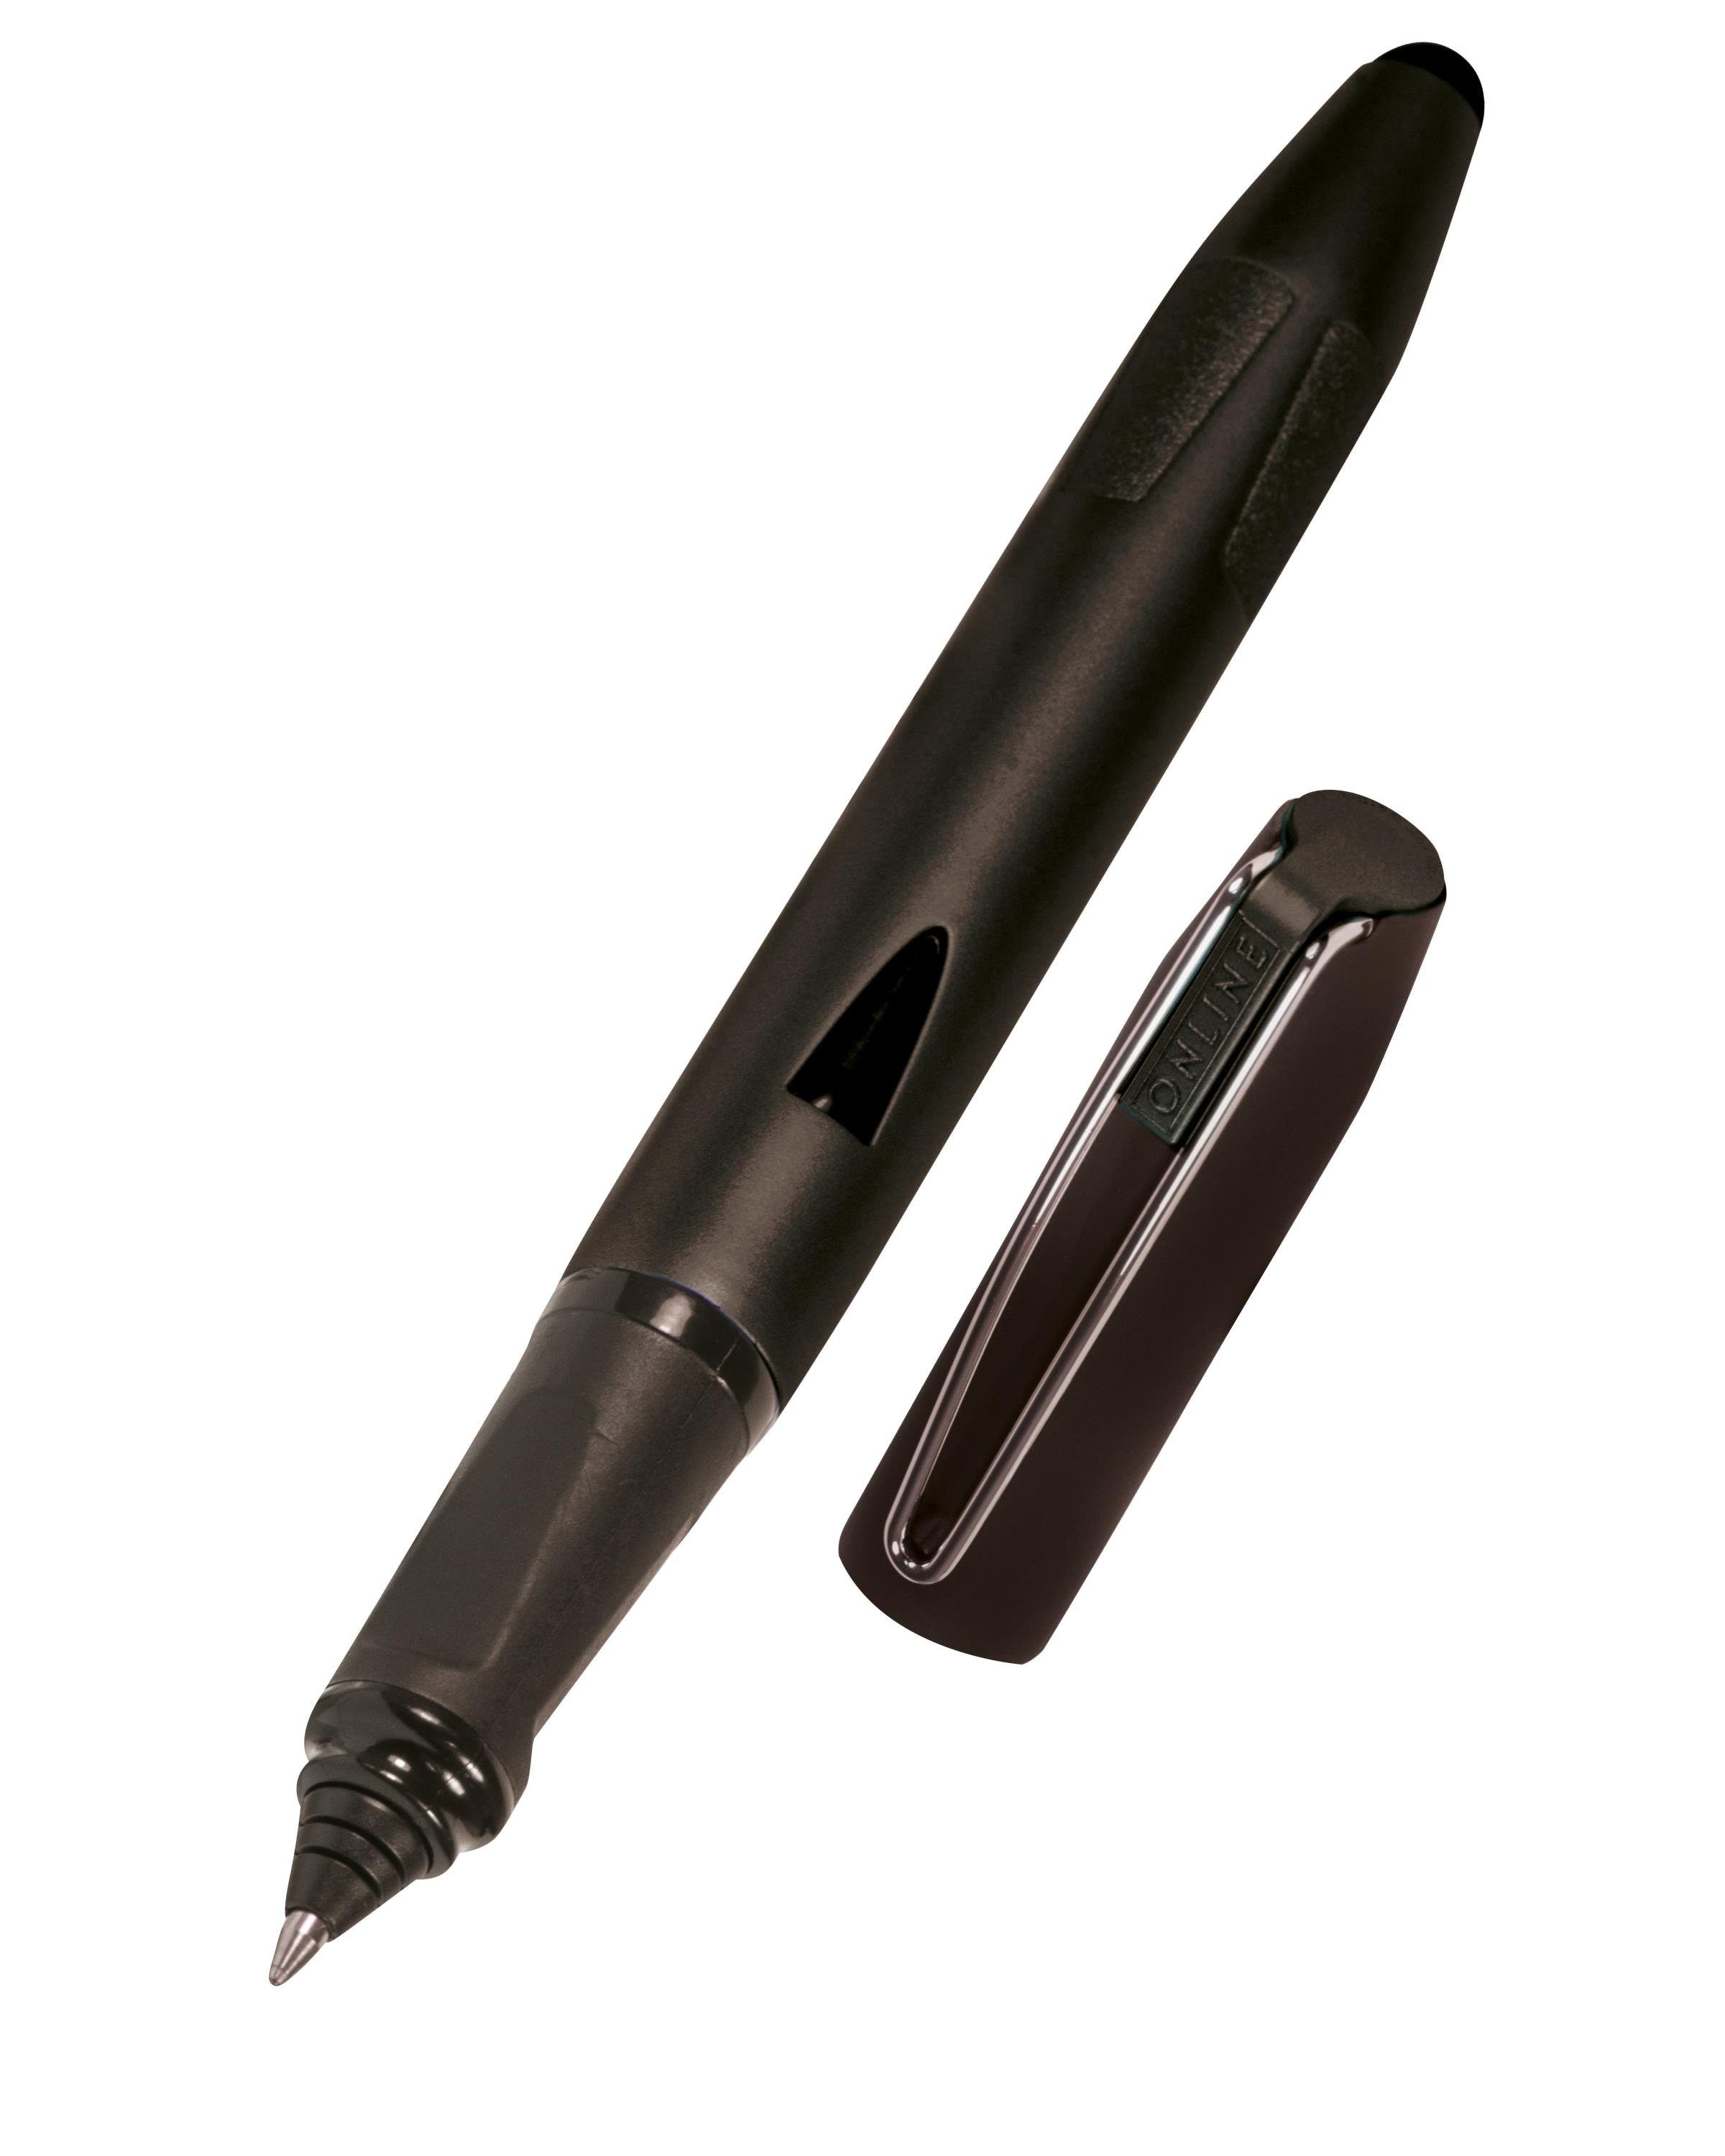 Online Pen Tintenroller für Schule, Plus, Switch die mit Stylus-Tip Schwarz ergonomisch, ideal